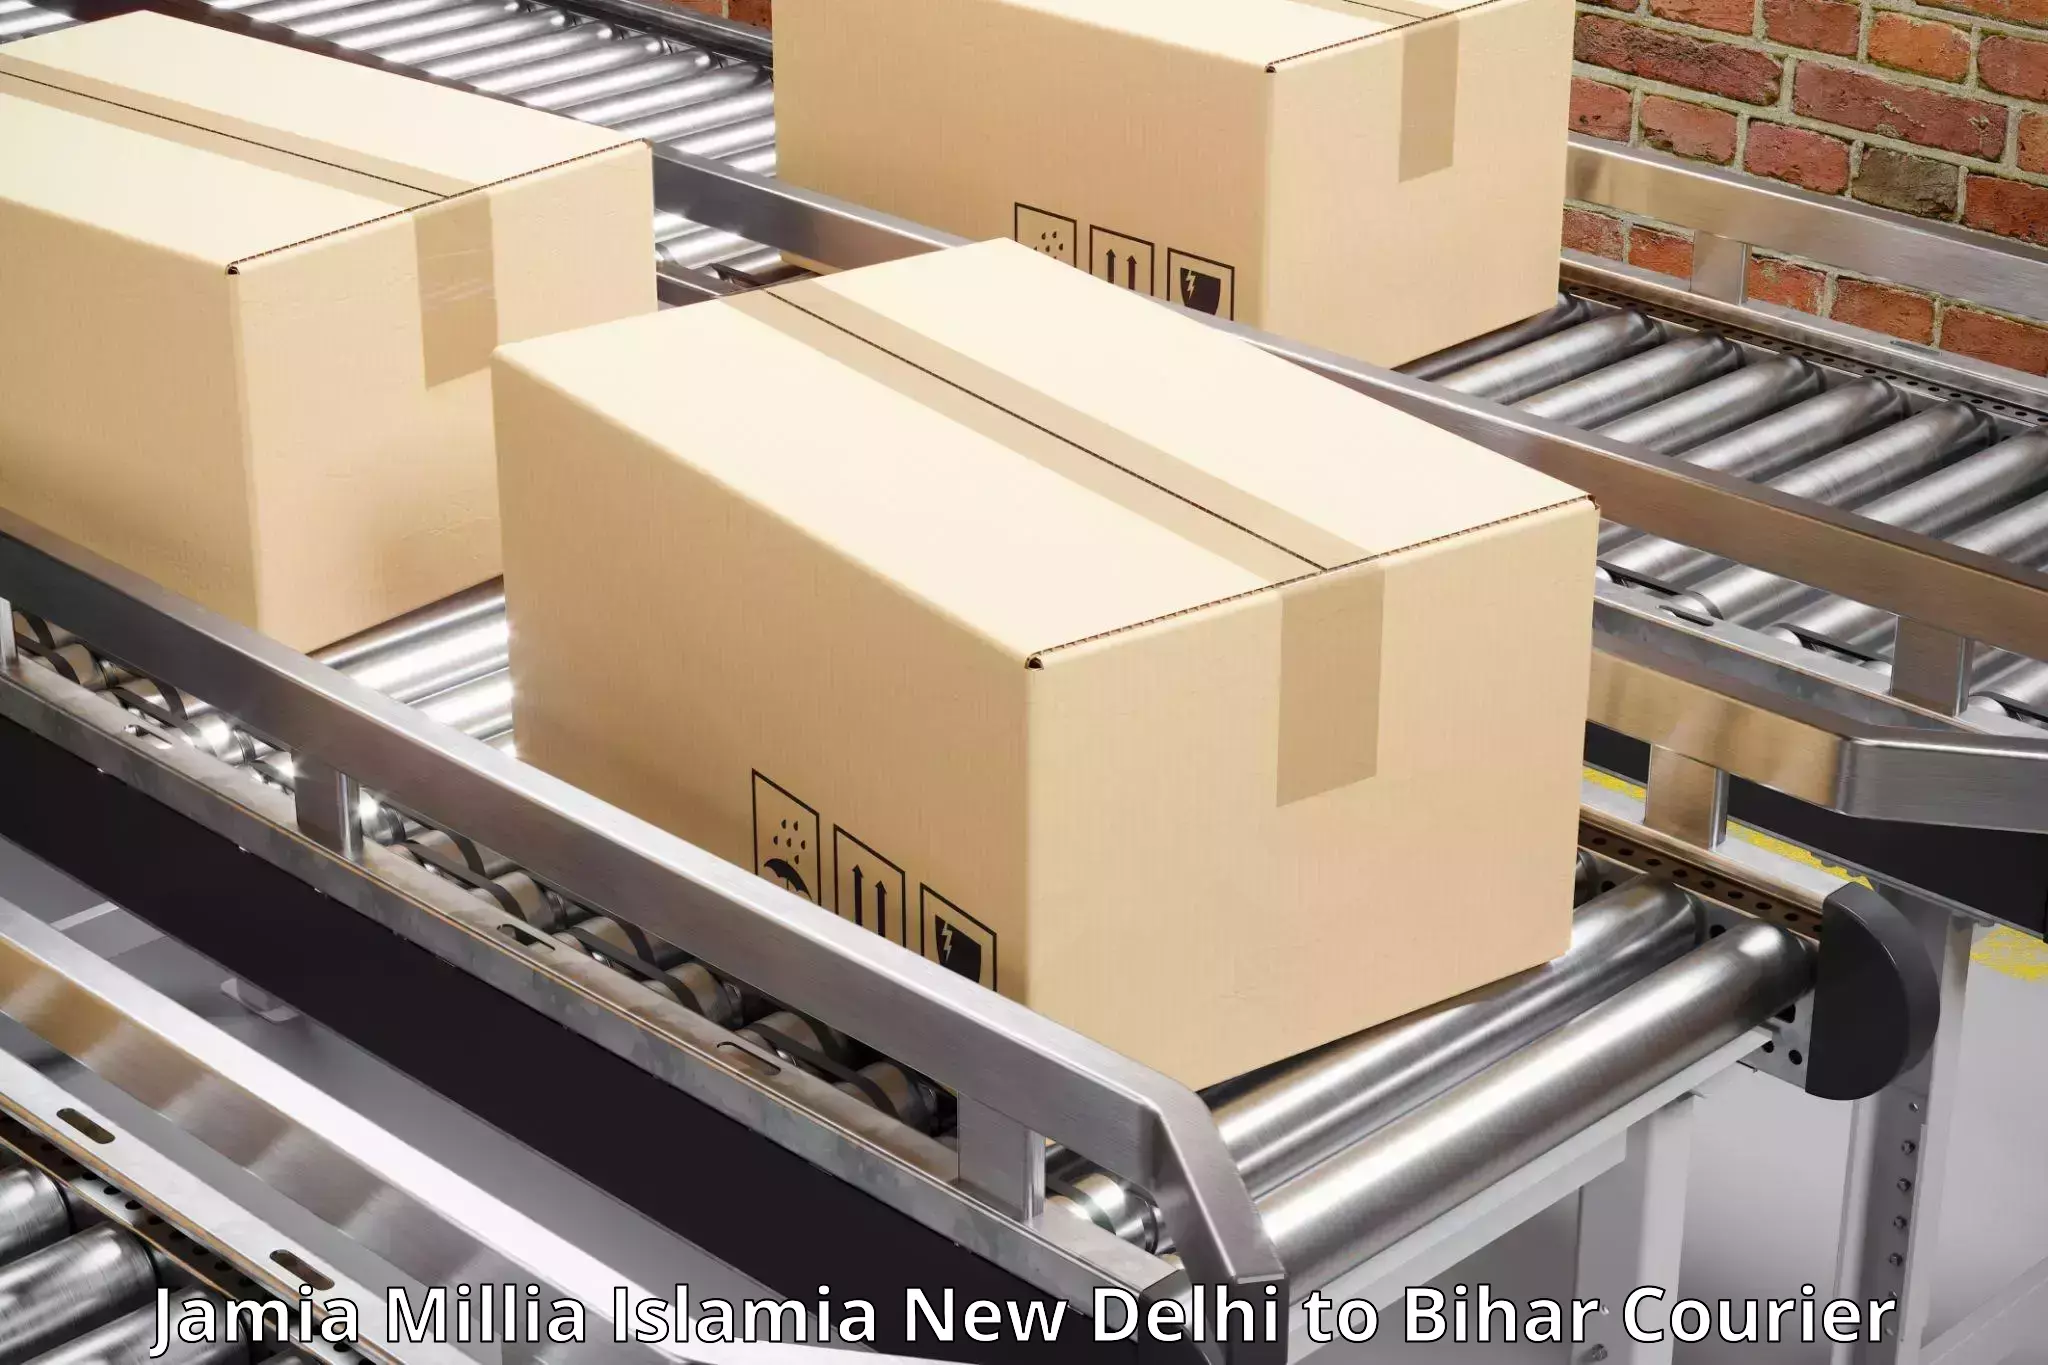 Express postal services Jamia Millia Islamia New Delhi to Bankipore